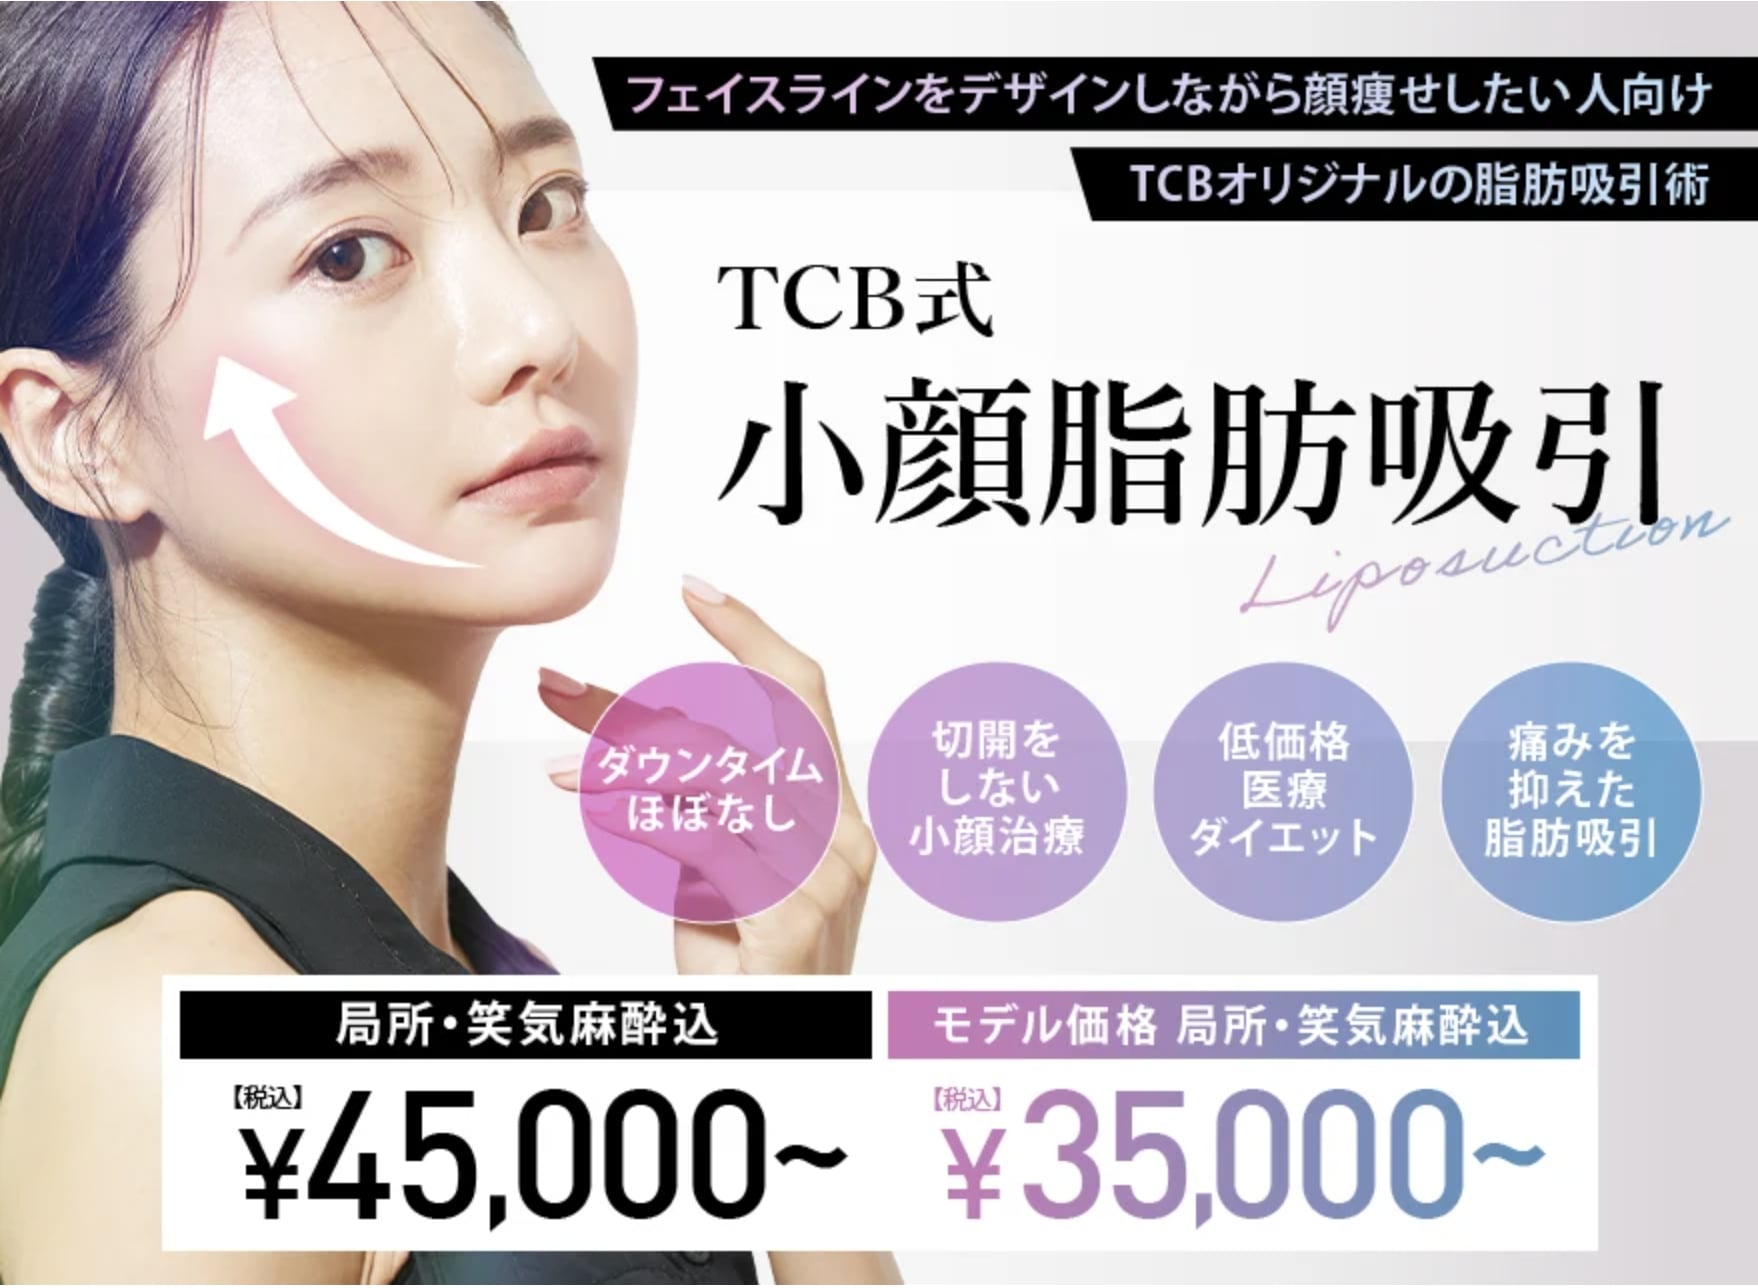 TCB 東京中央美容外科|半身向けのメニュー多数